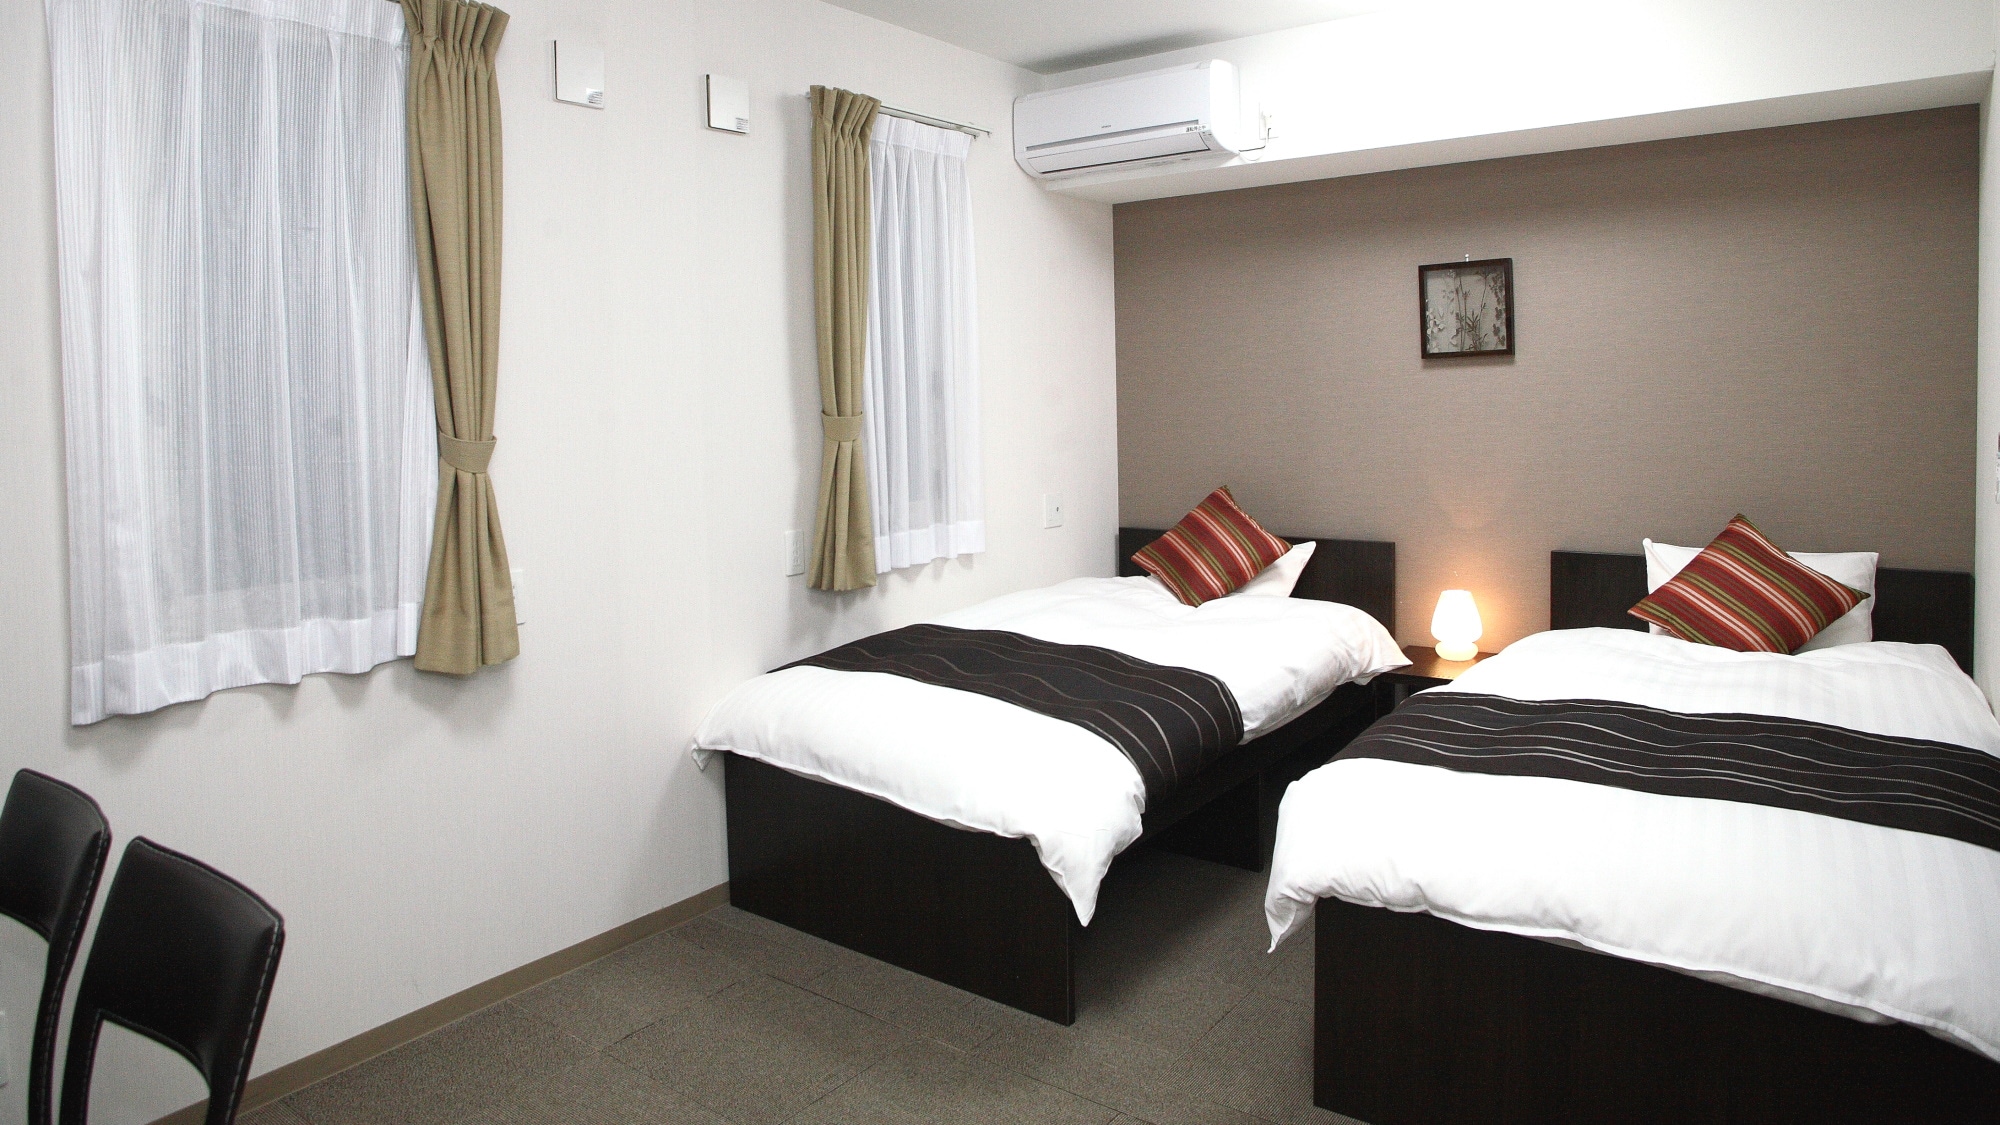 ห้องเตียงแฝด (23.6 ตารางเมตร) พร้อมเครื่องปรับอากาศส่วนตัวและ Wi-Fi